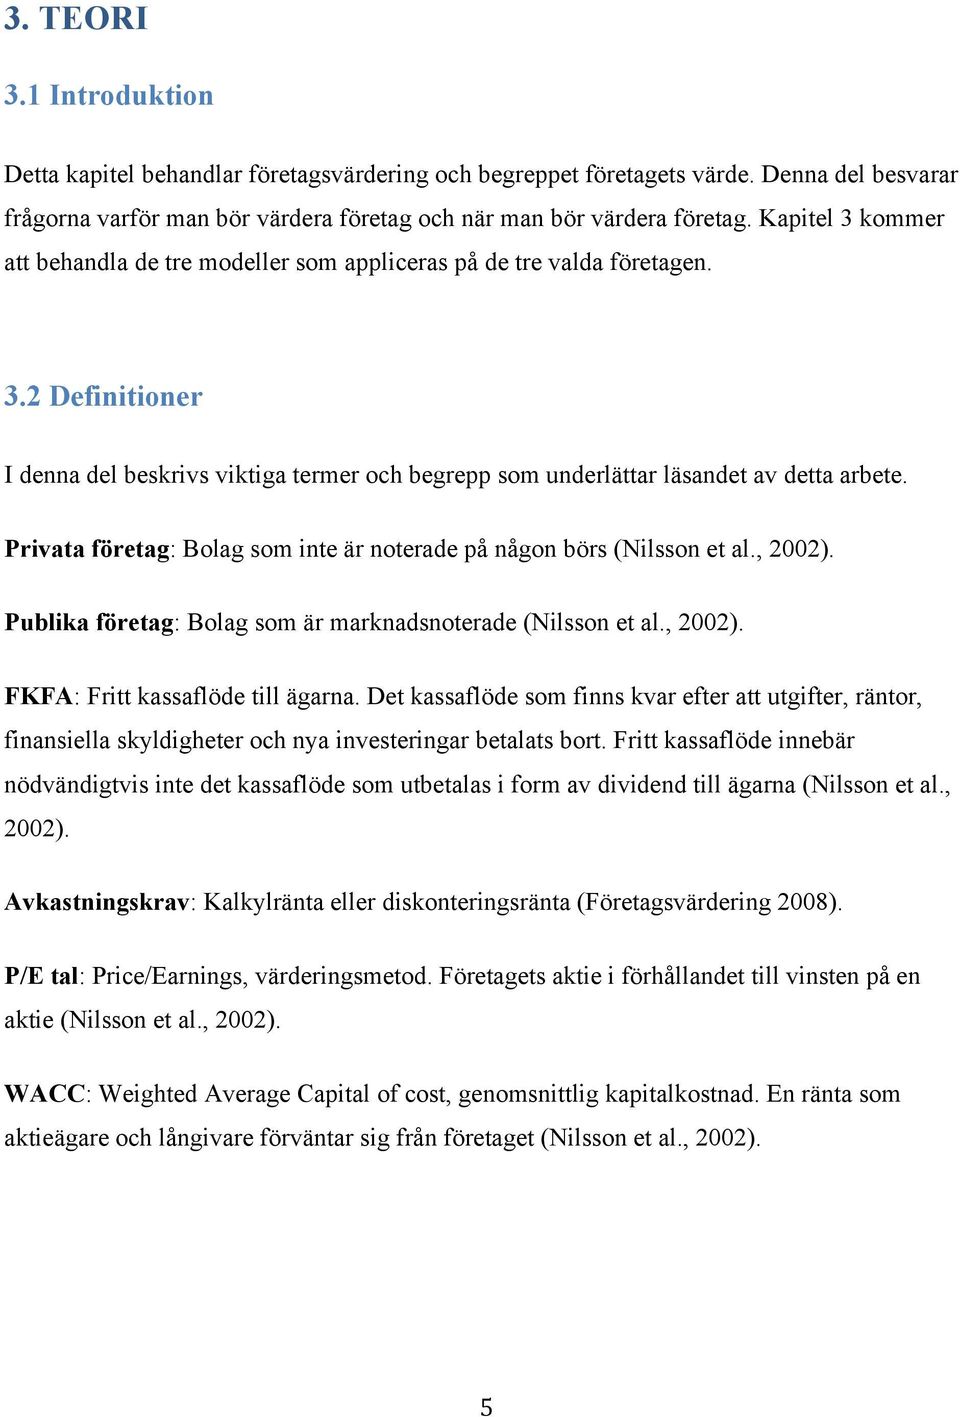 Privata företag: Bolag som inte är noterade på någon börs (Nilsson et al., 2002). Publika företag: Bolag som är marknadsnoterade (Nilsson et al., 2002). FKFA: Fritt kassaflöde till ägarna.